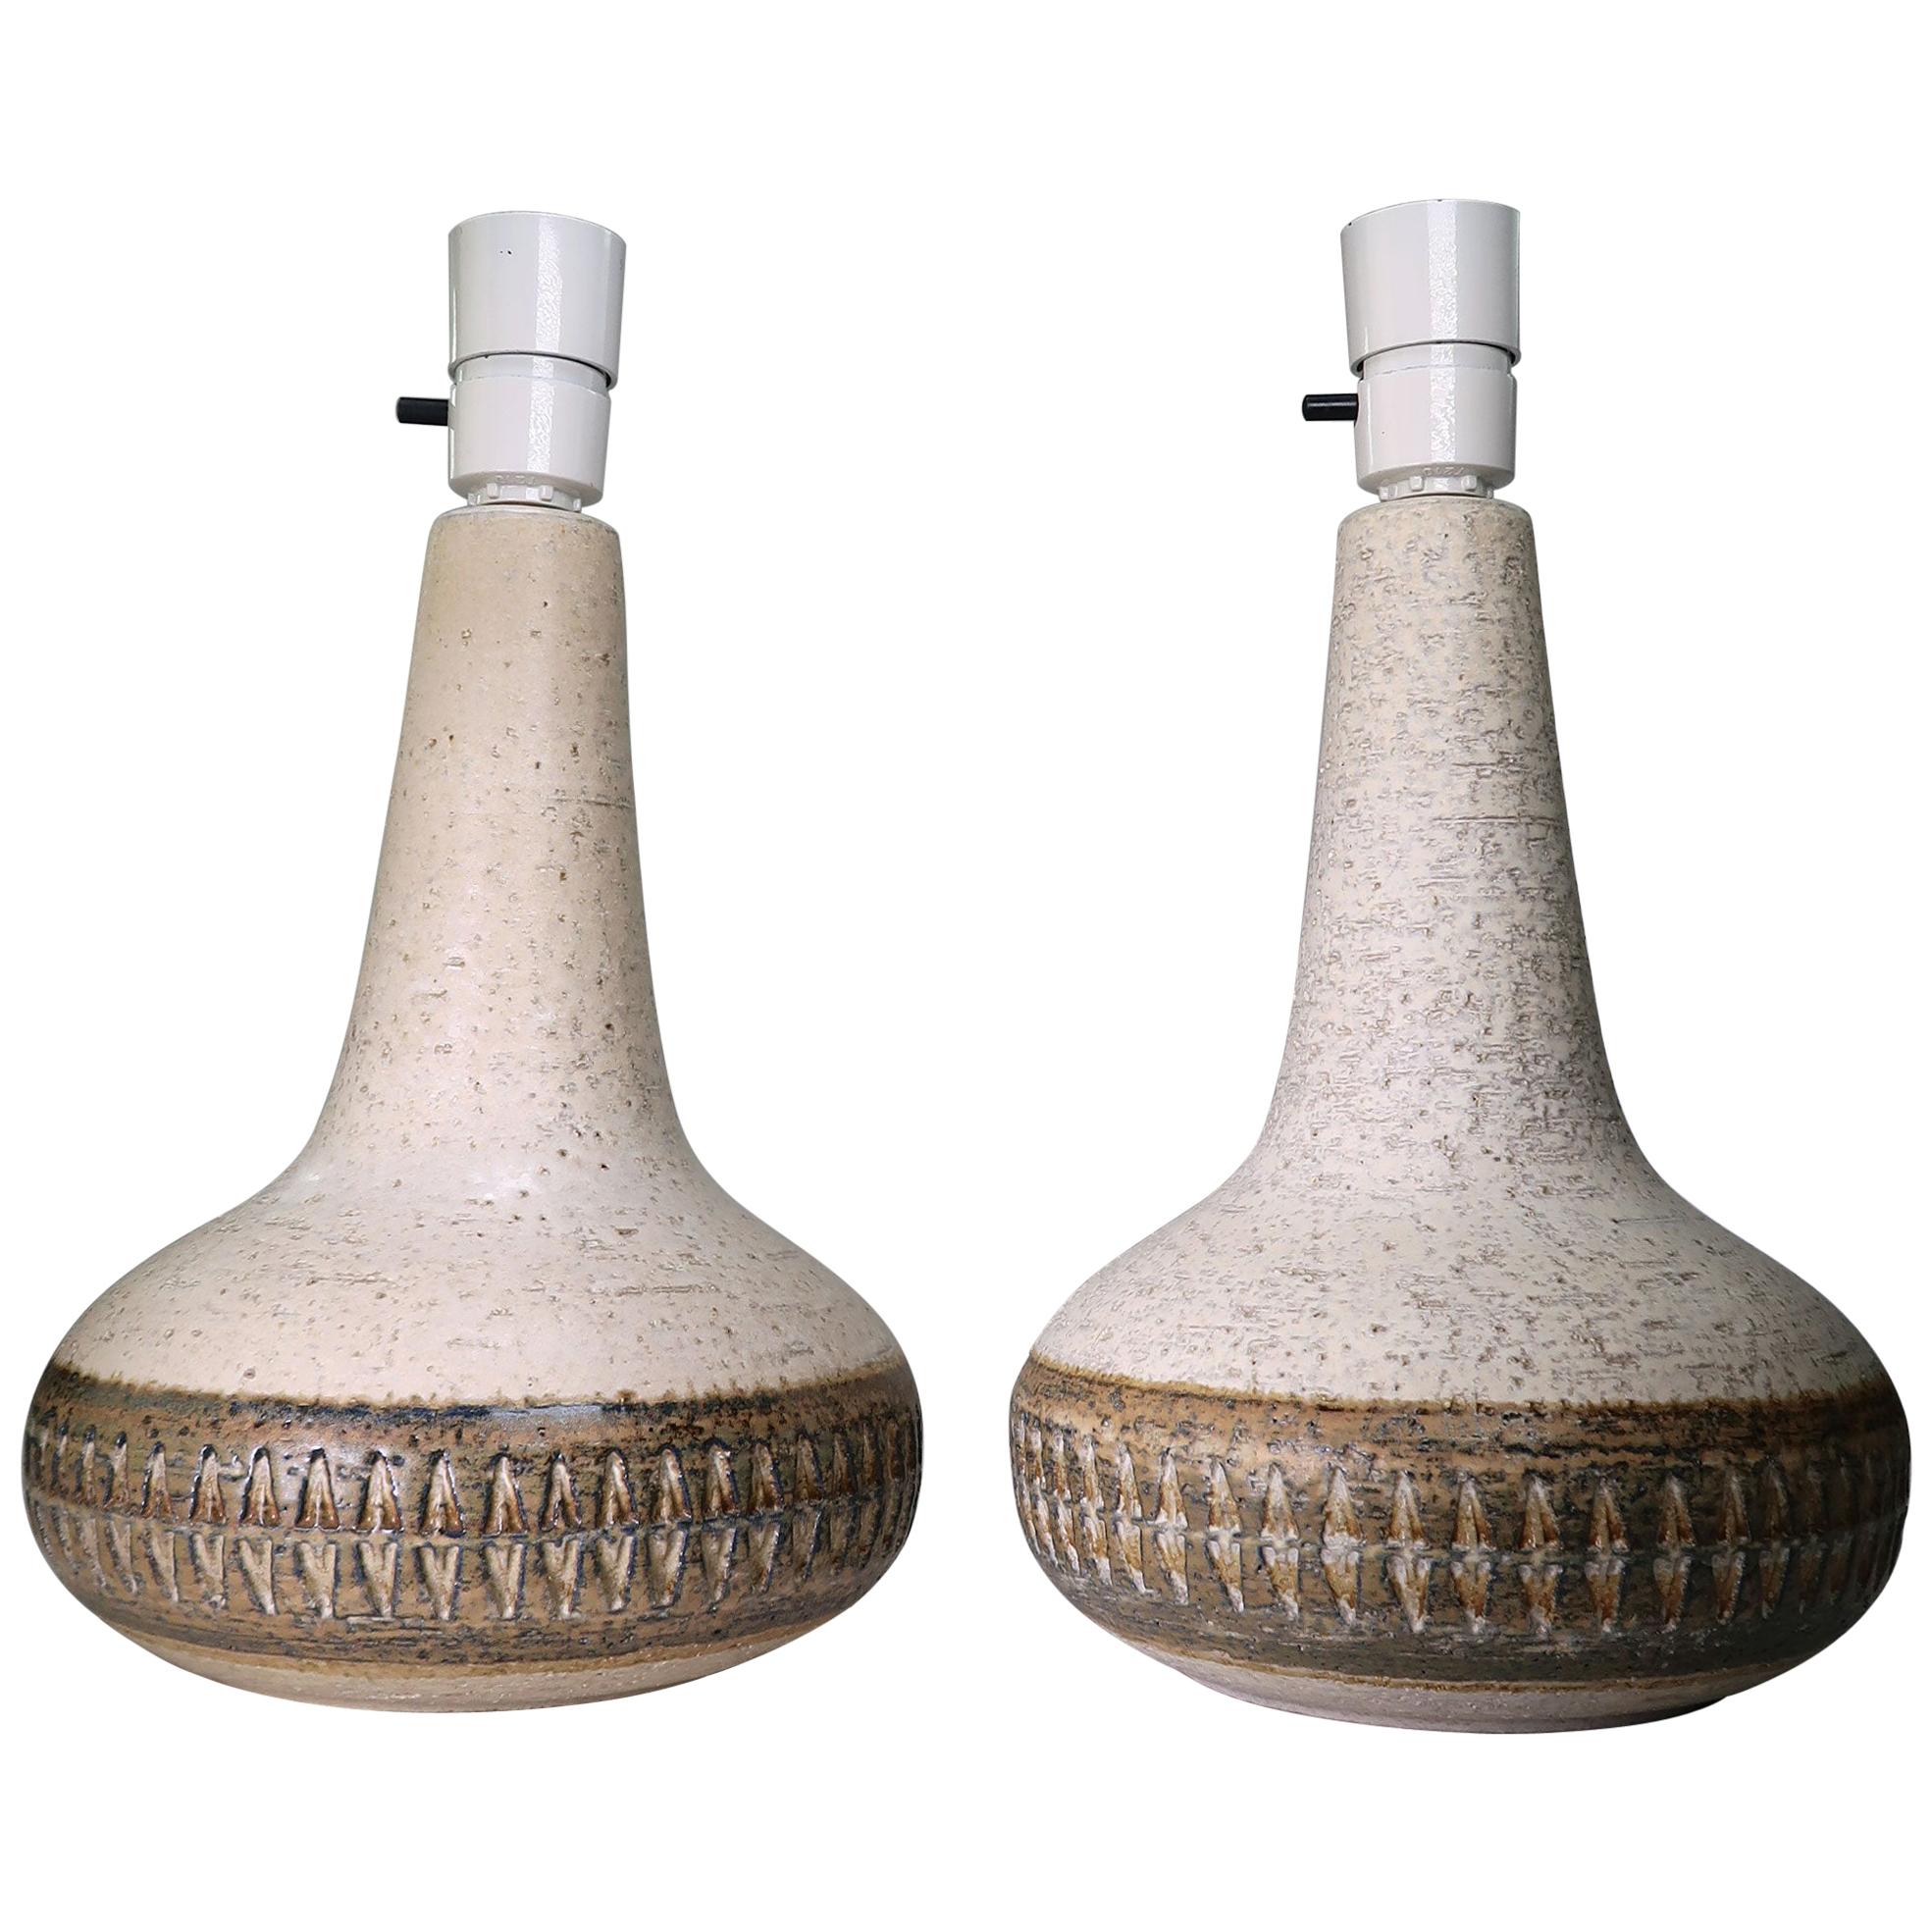 Søholm Handgefertigte dänische Tischlampen aus cremefarbenem, braunem Steingut, 1960er Jahre